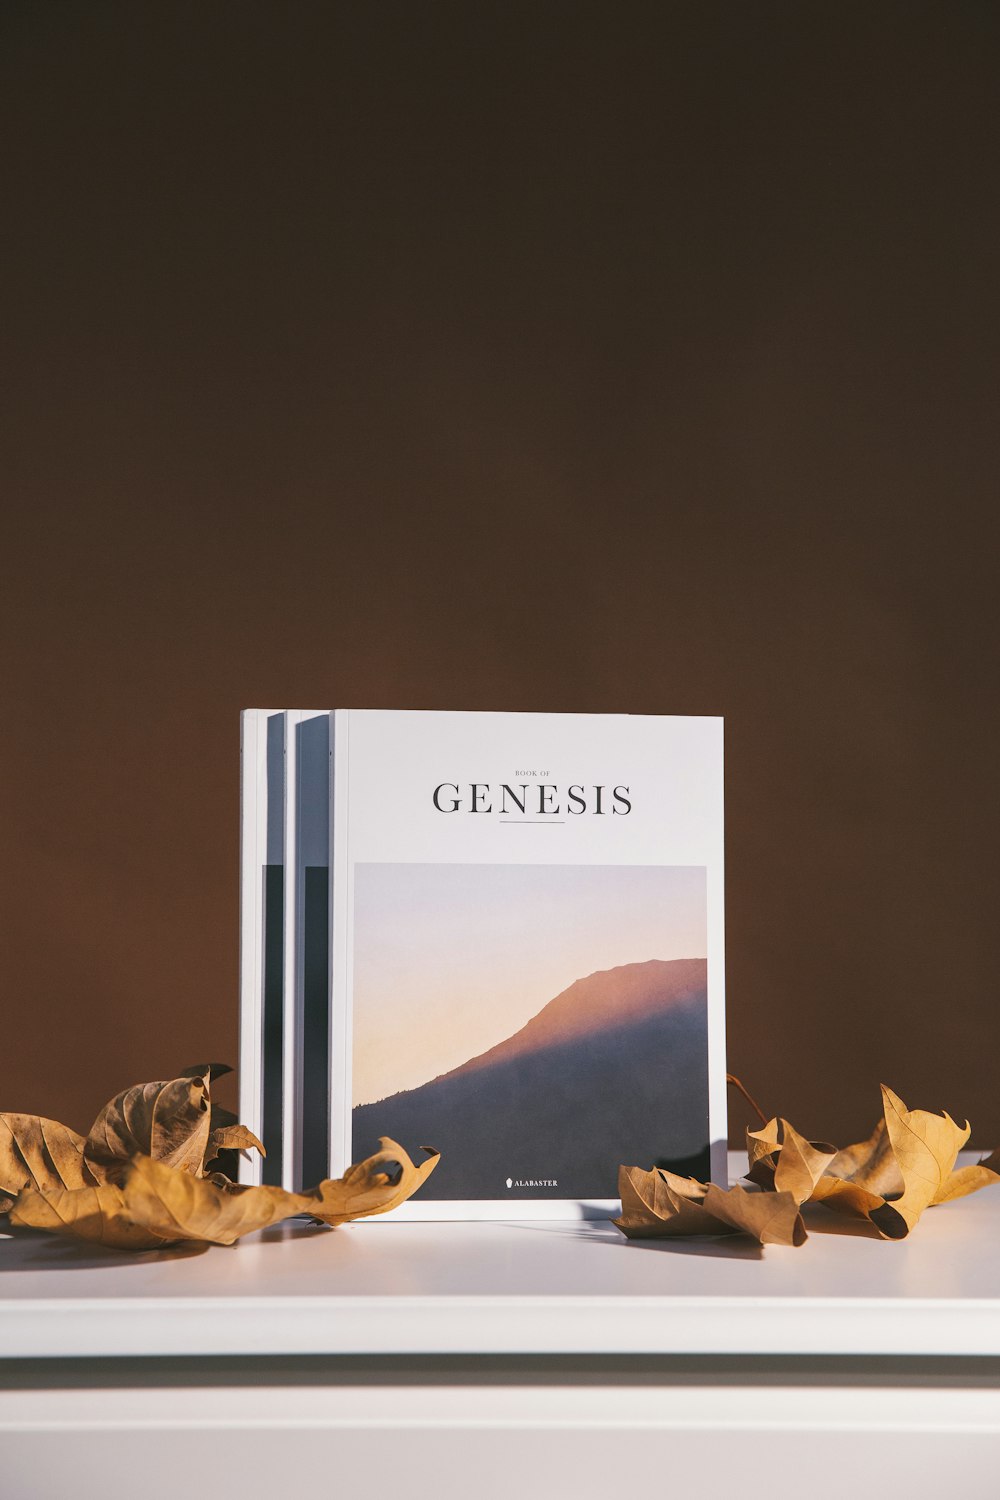 Genesis book on table